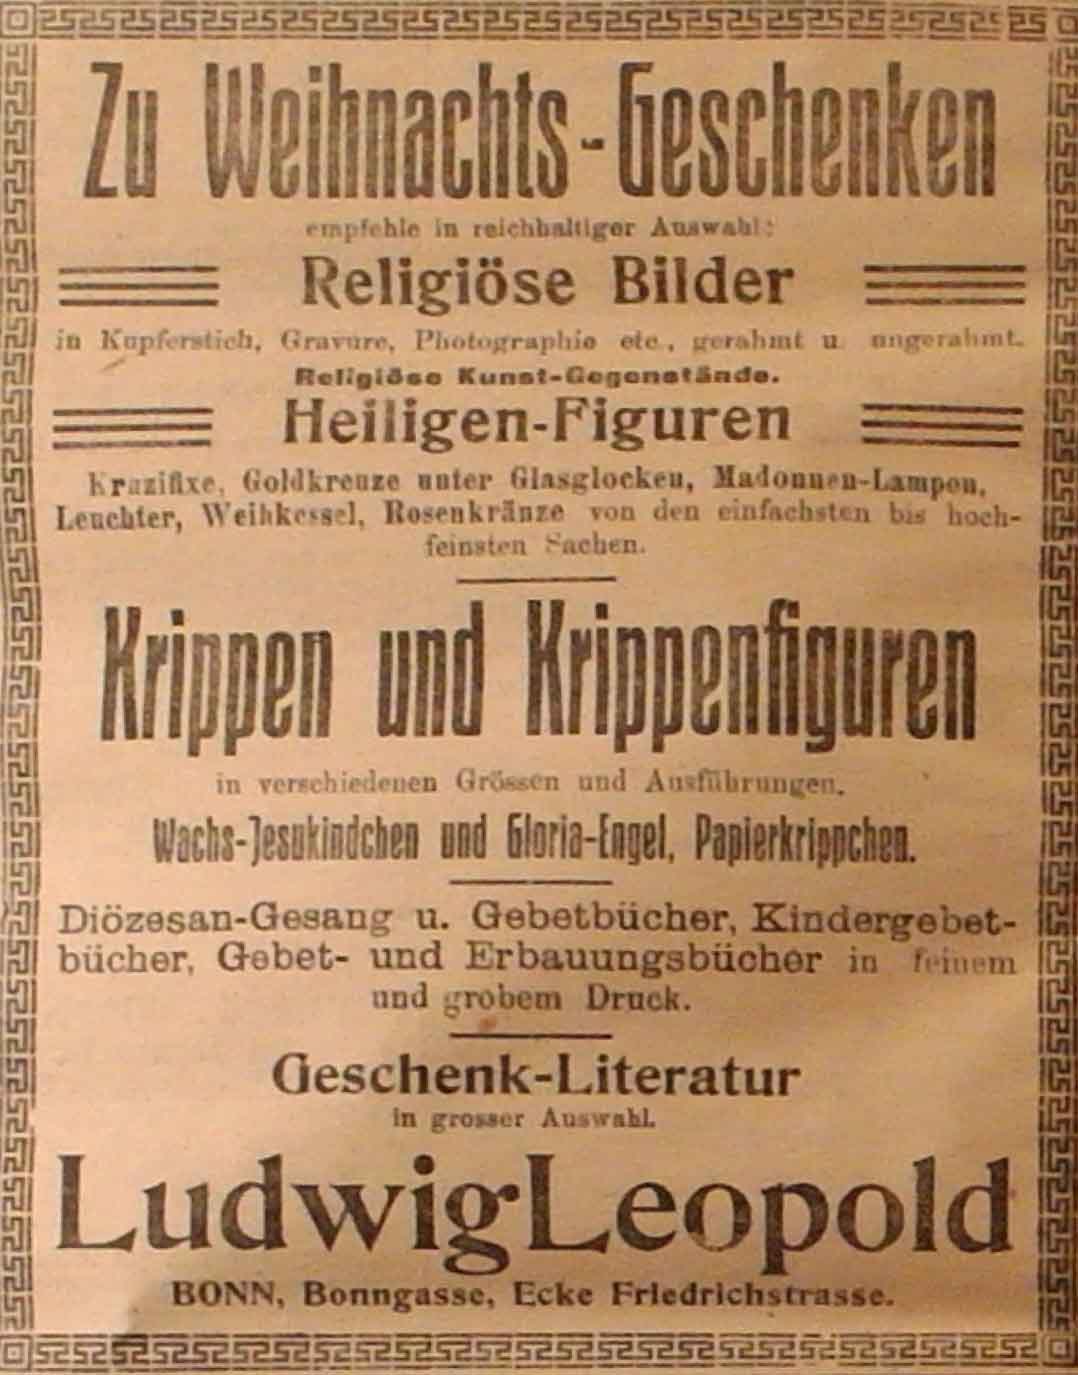 Anzeige in der Deutschen Reichszeitung vom 18. Dezember 1914